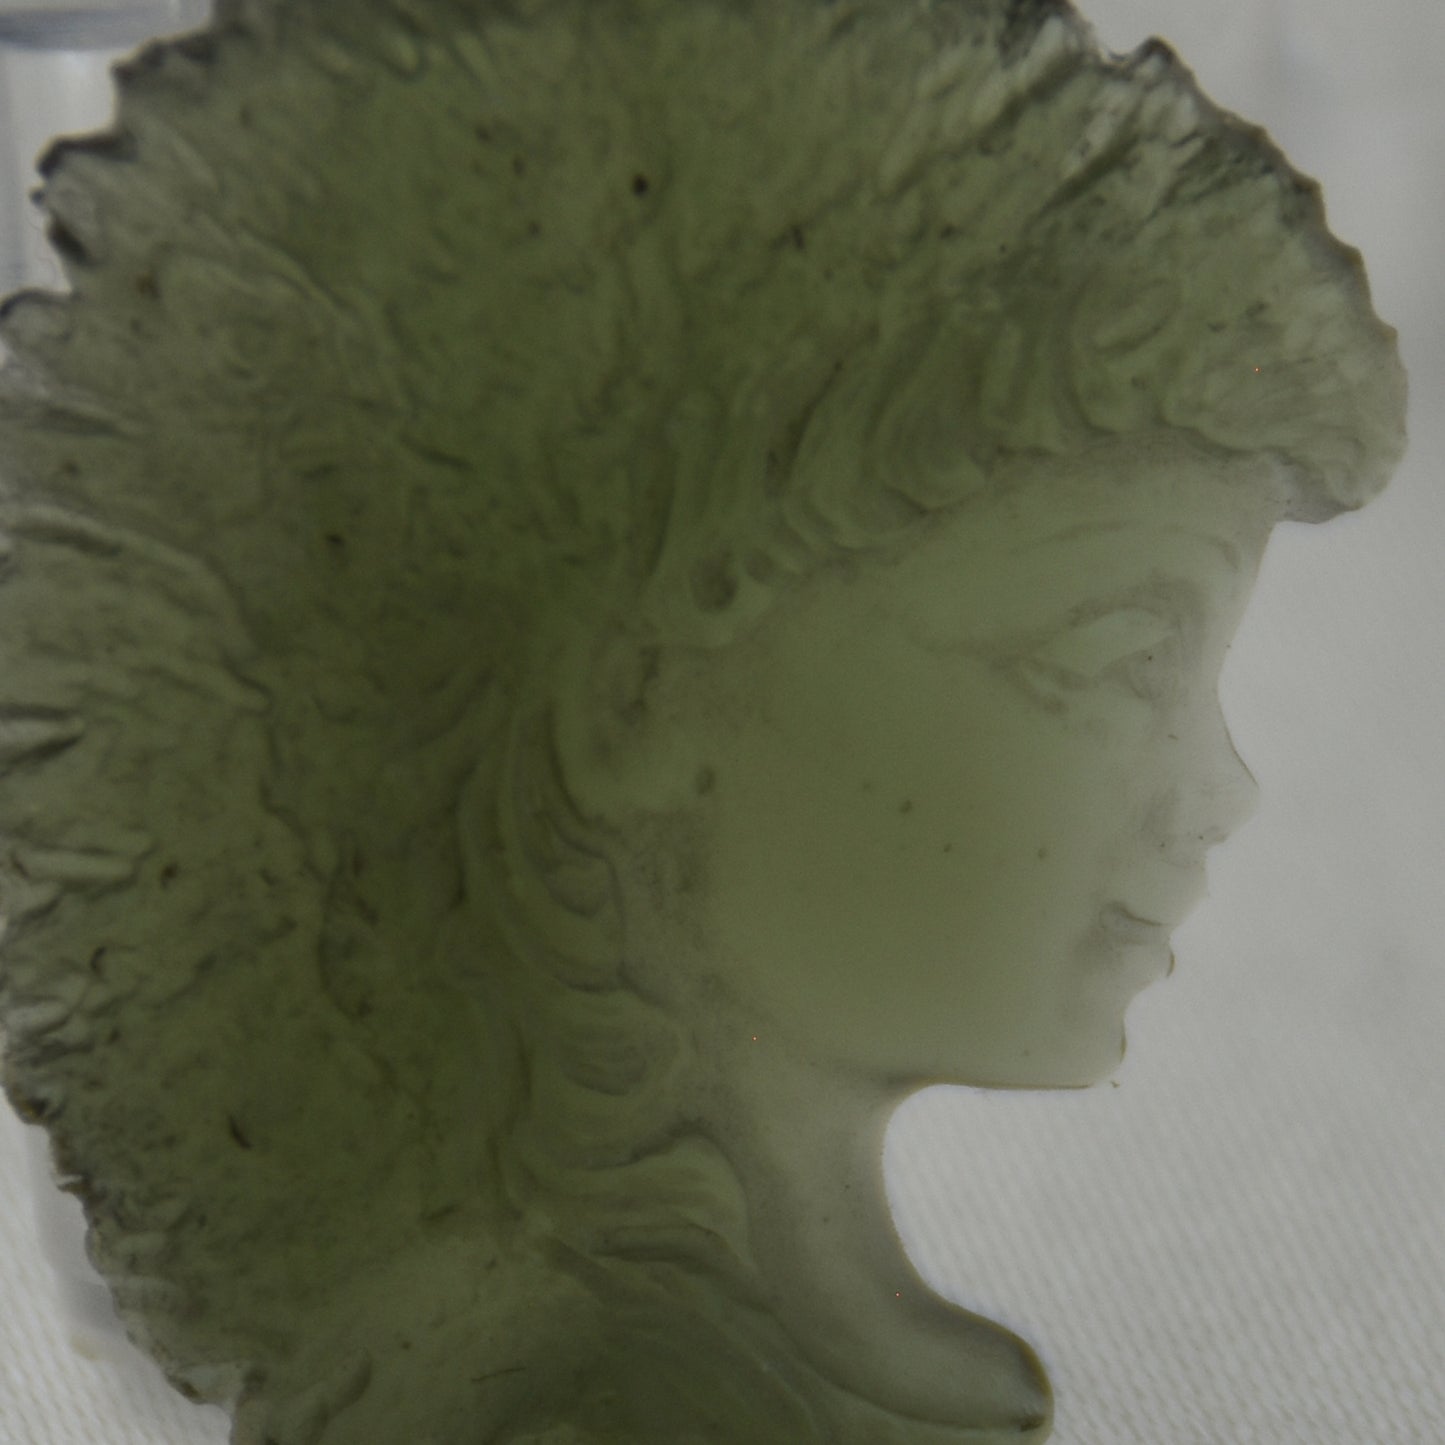 Moldavite Goddess Face Carving